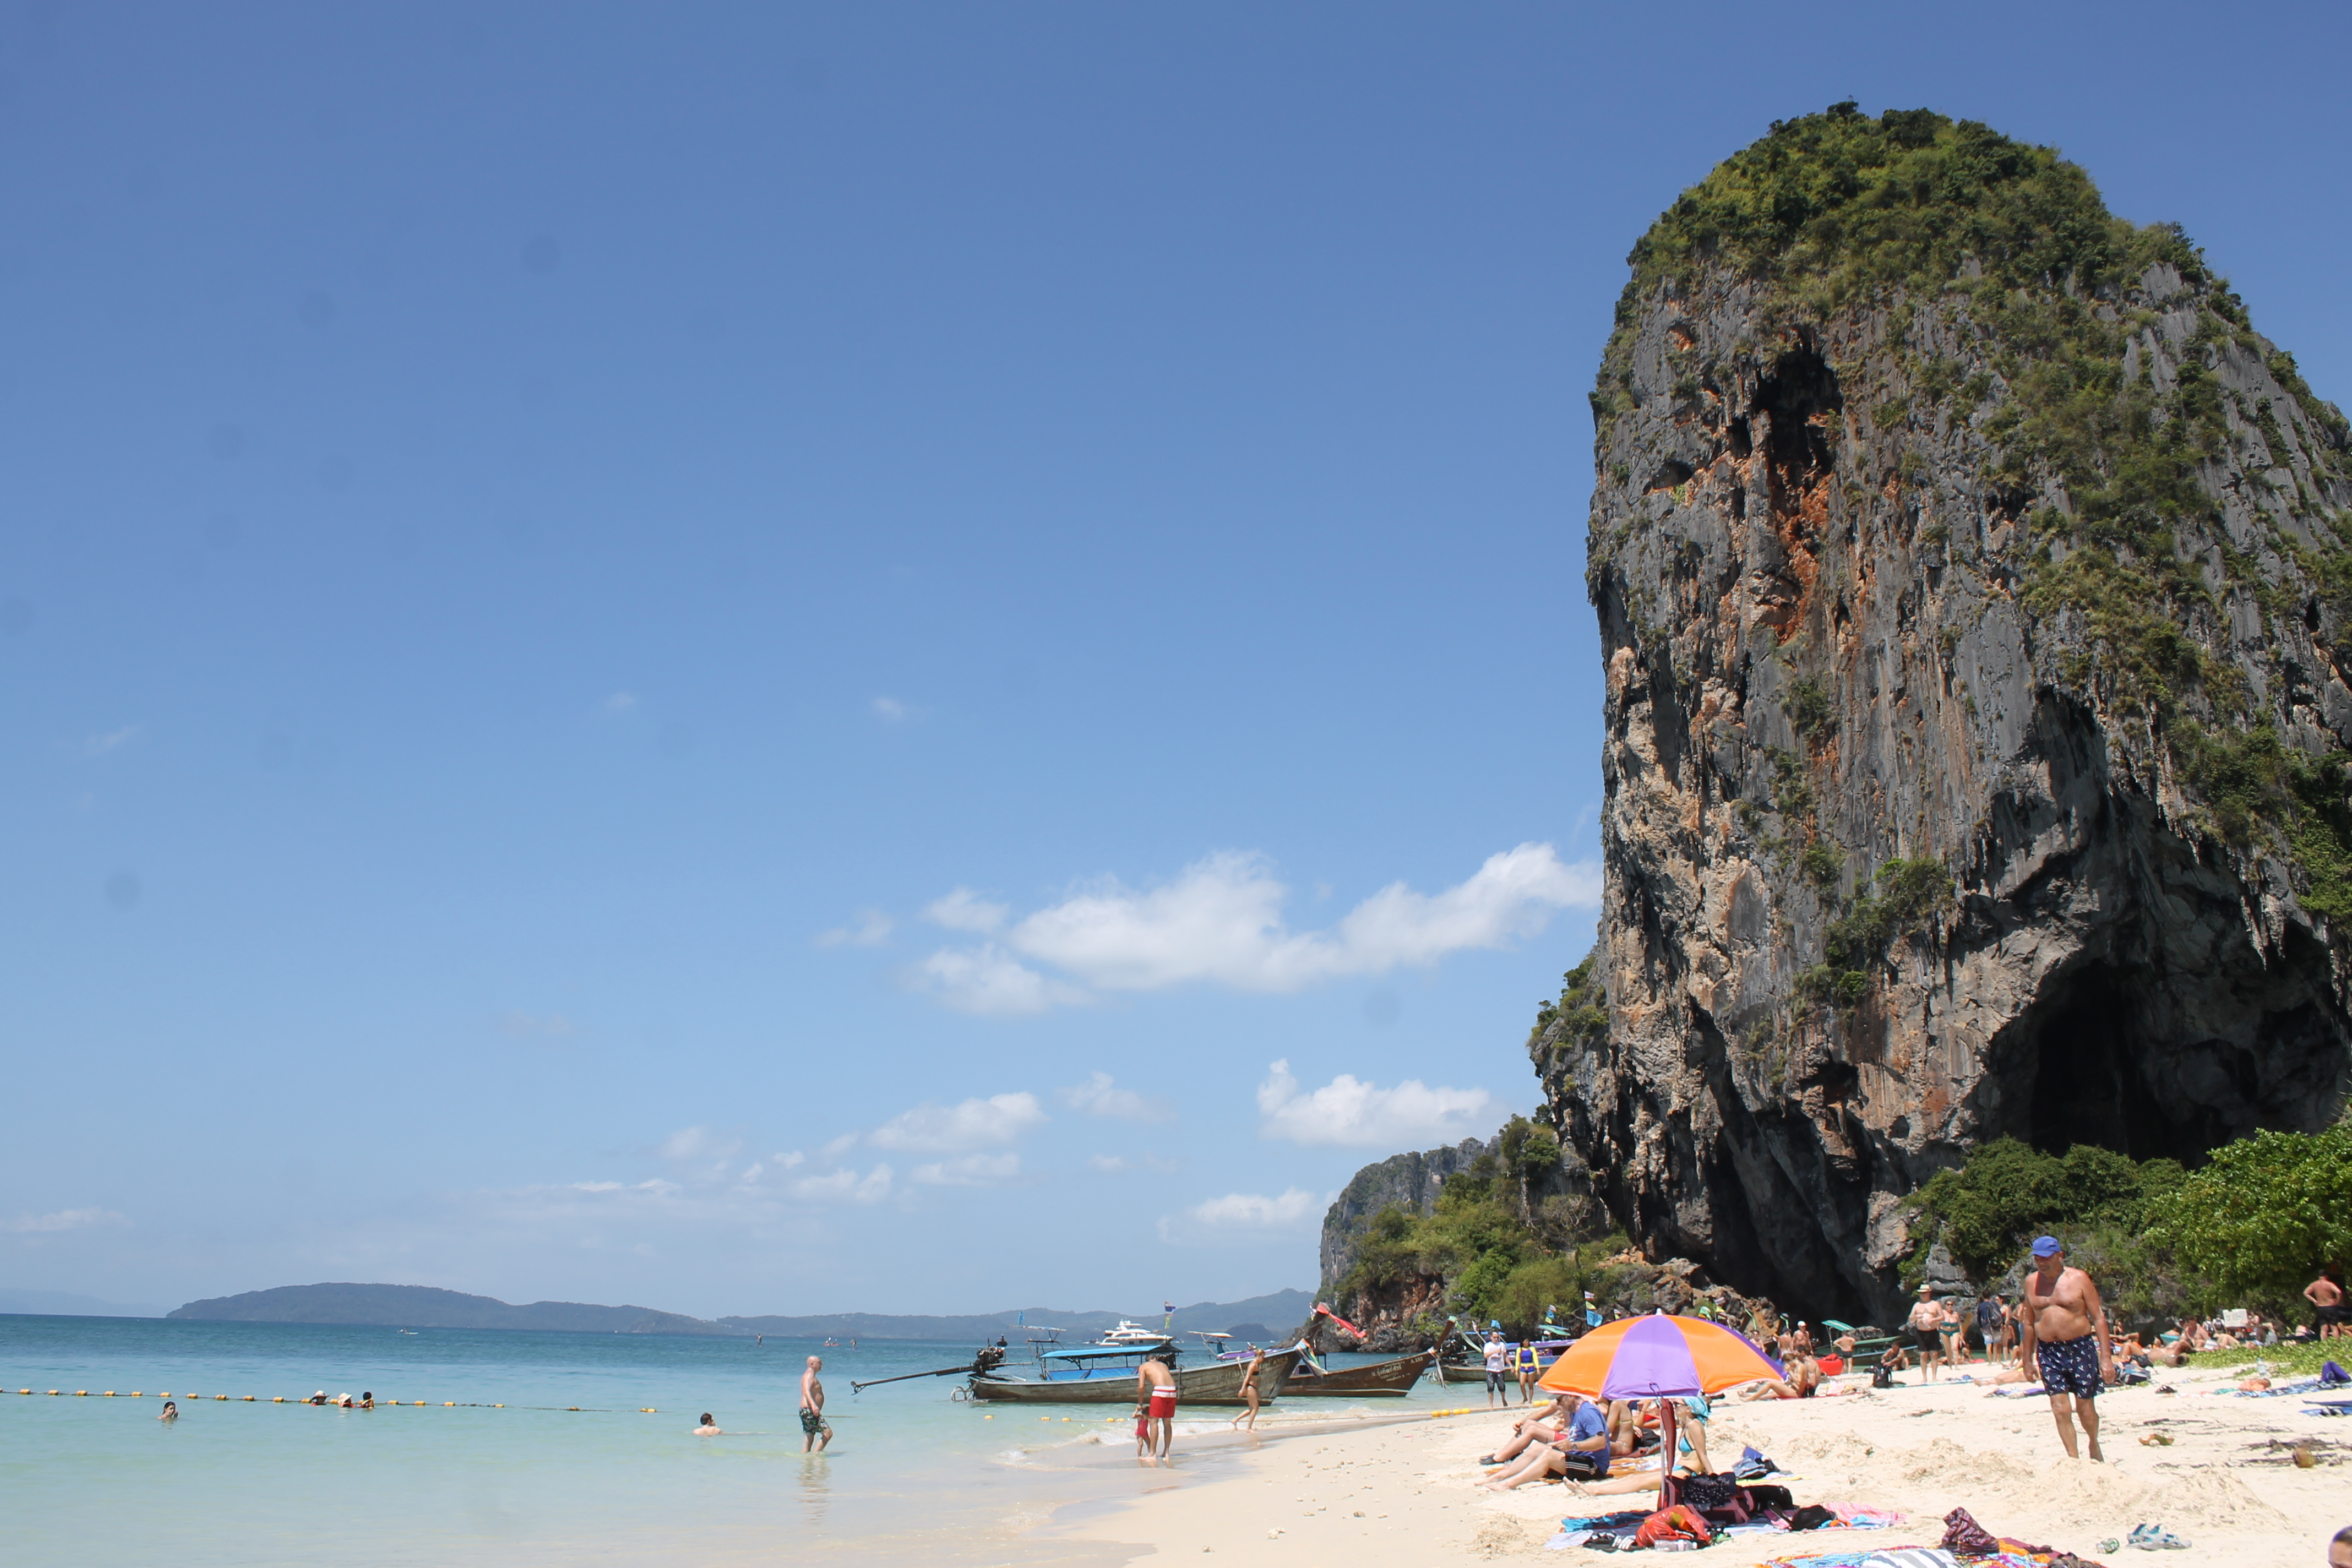 Краби тайланд. Пляж Прананг Краби. Остров Чикен Краби. Провинция Краби Таиланд пляжи. Пхра Нанг Таиланд.